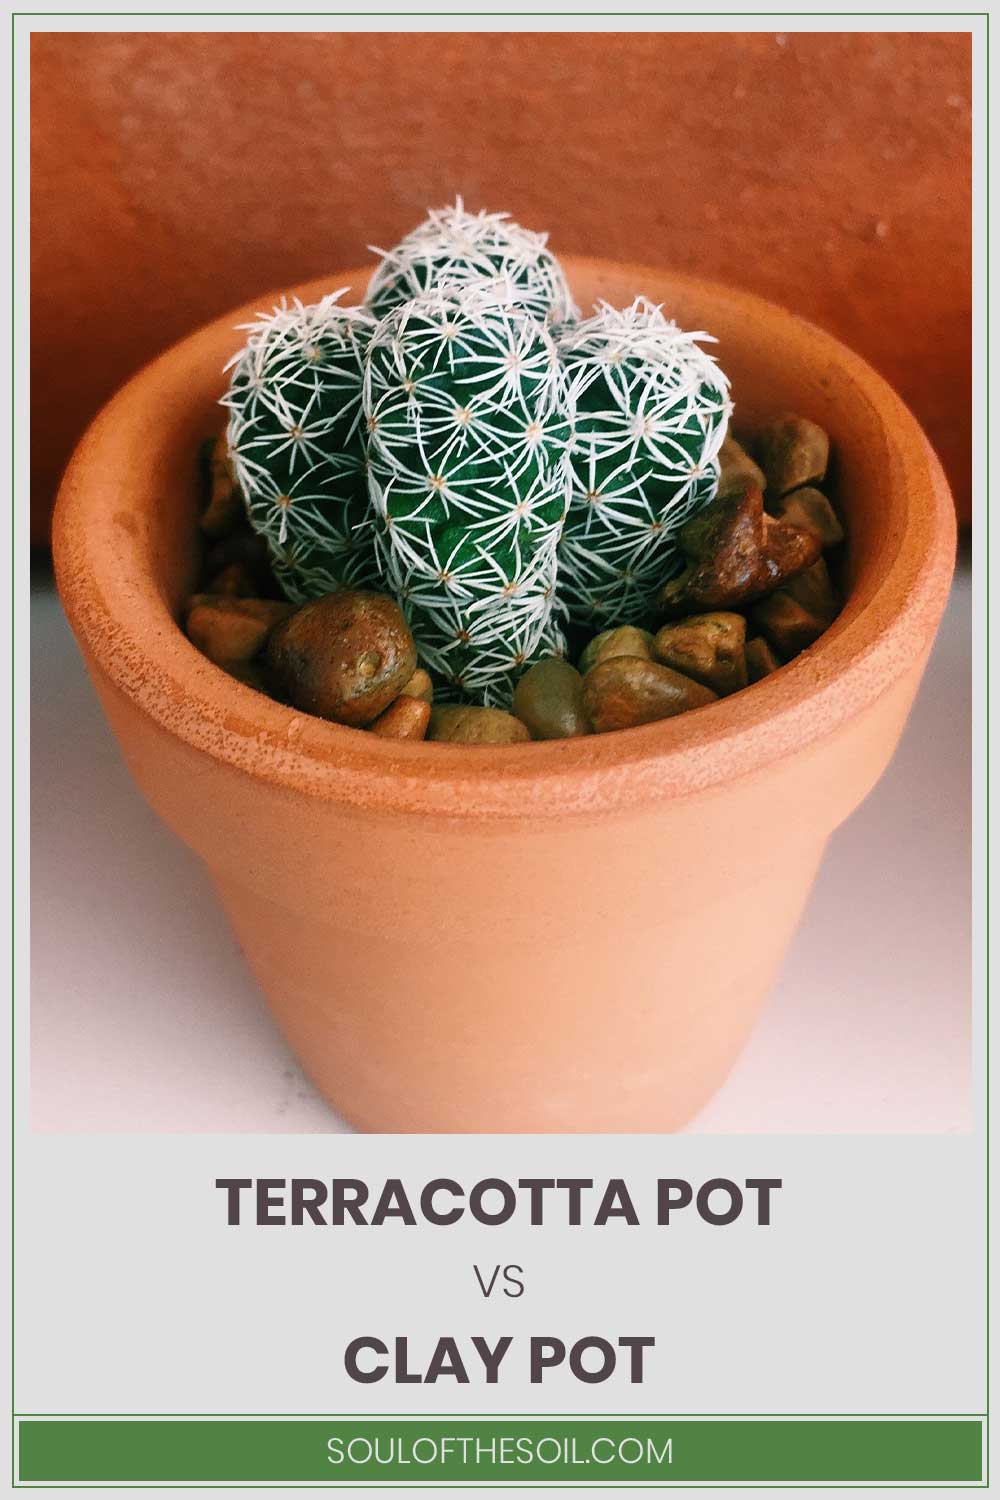 A tiny cactus in a pot - Terracotta Pot vs. Clay Pot.